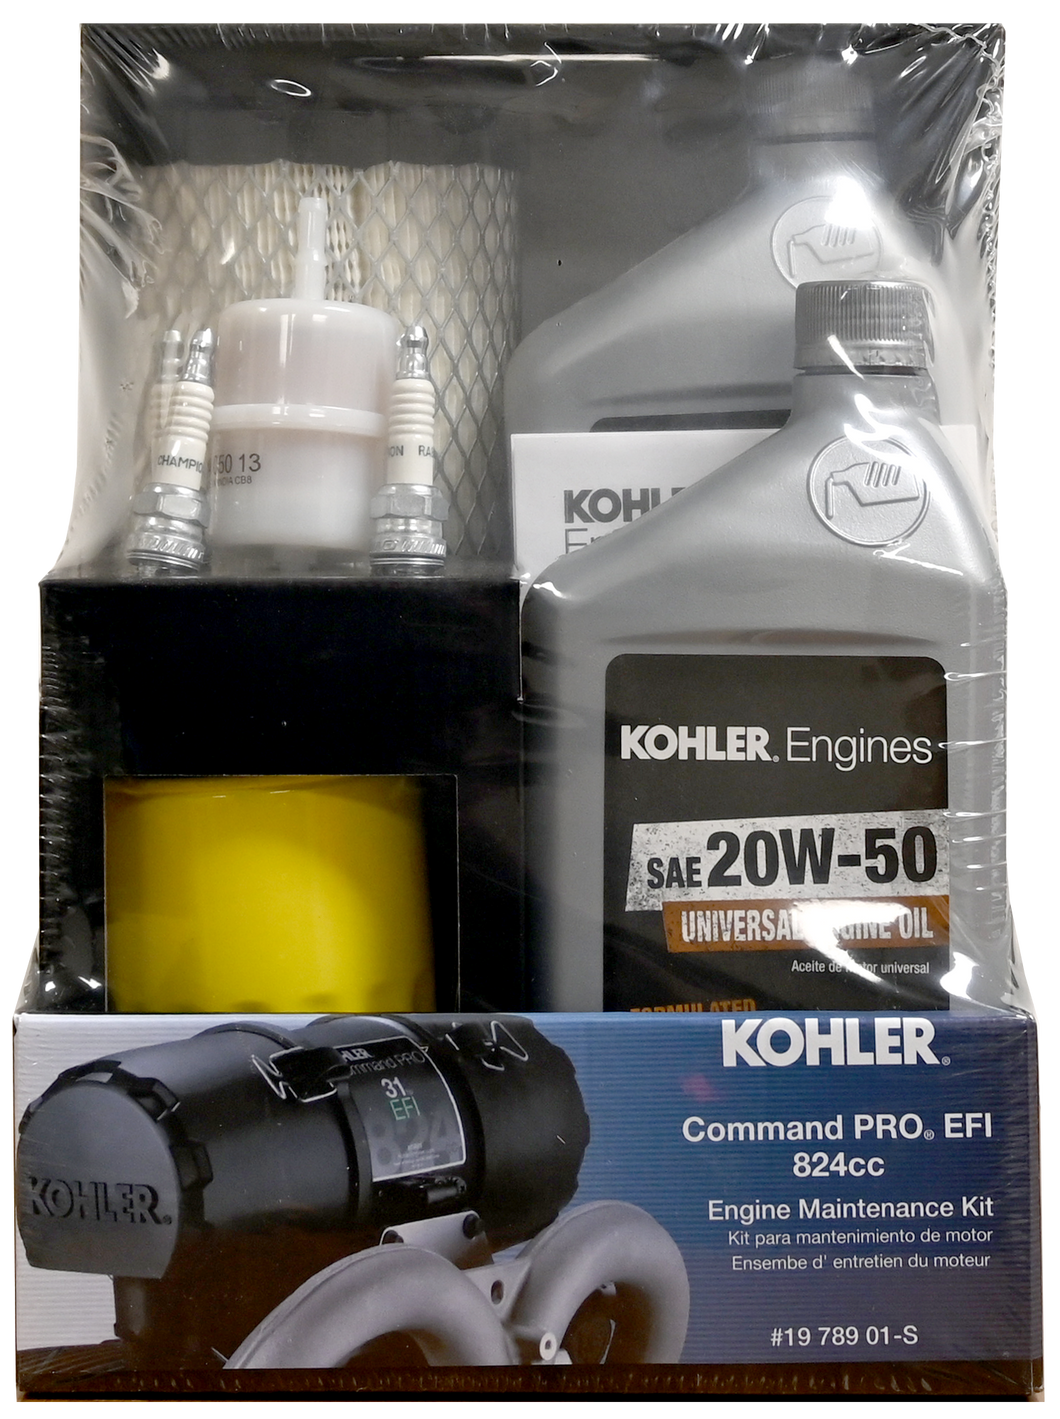 Kohler Engine Maintenance Kit - Command Pro EFI 824cc (19 789 01-S)